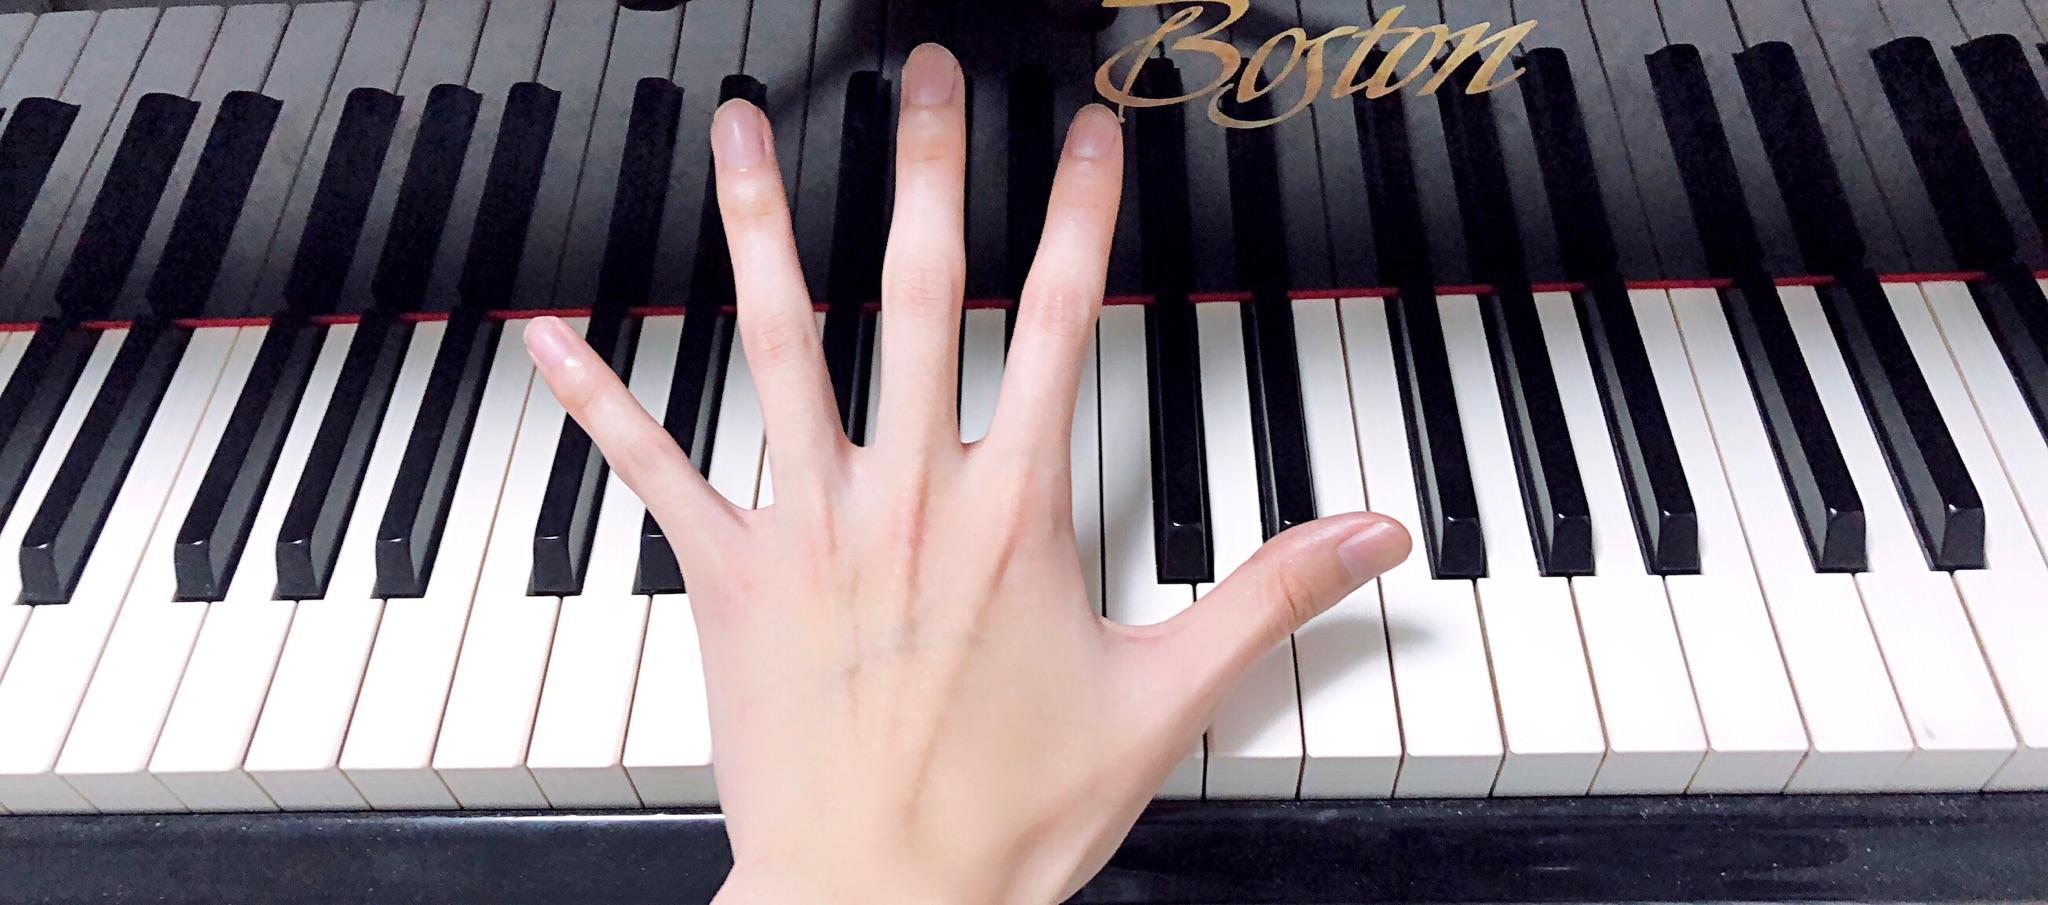 弹钢琴的人的手和普通人有区别吗? 